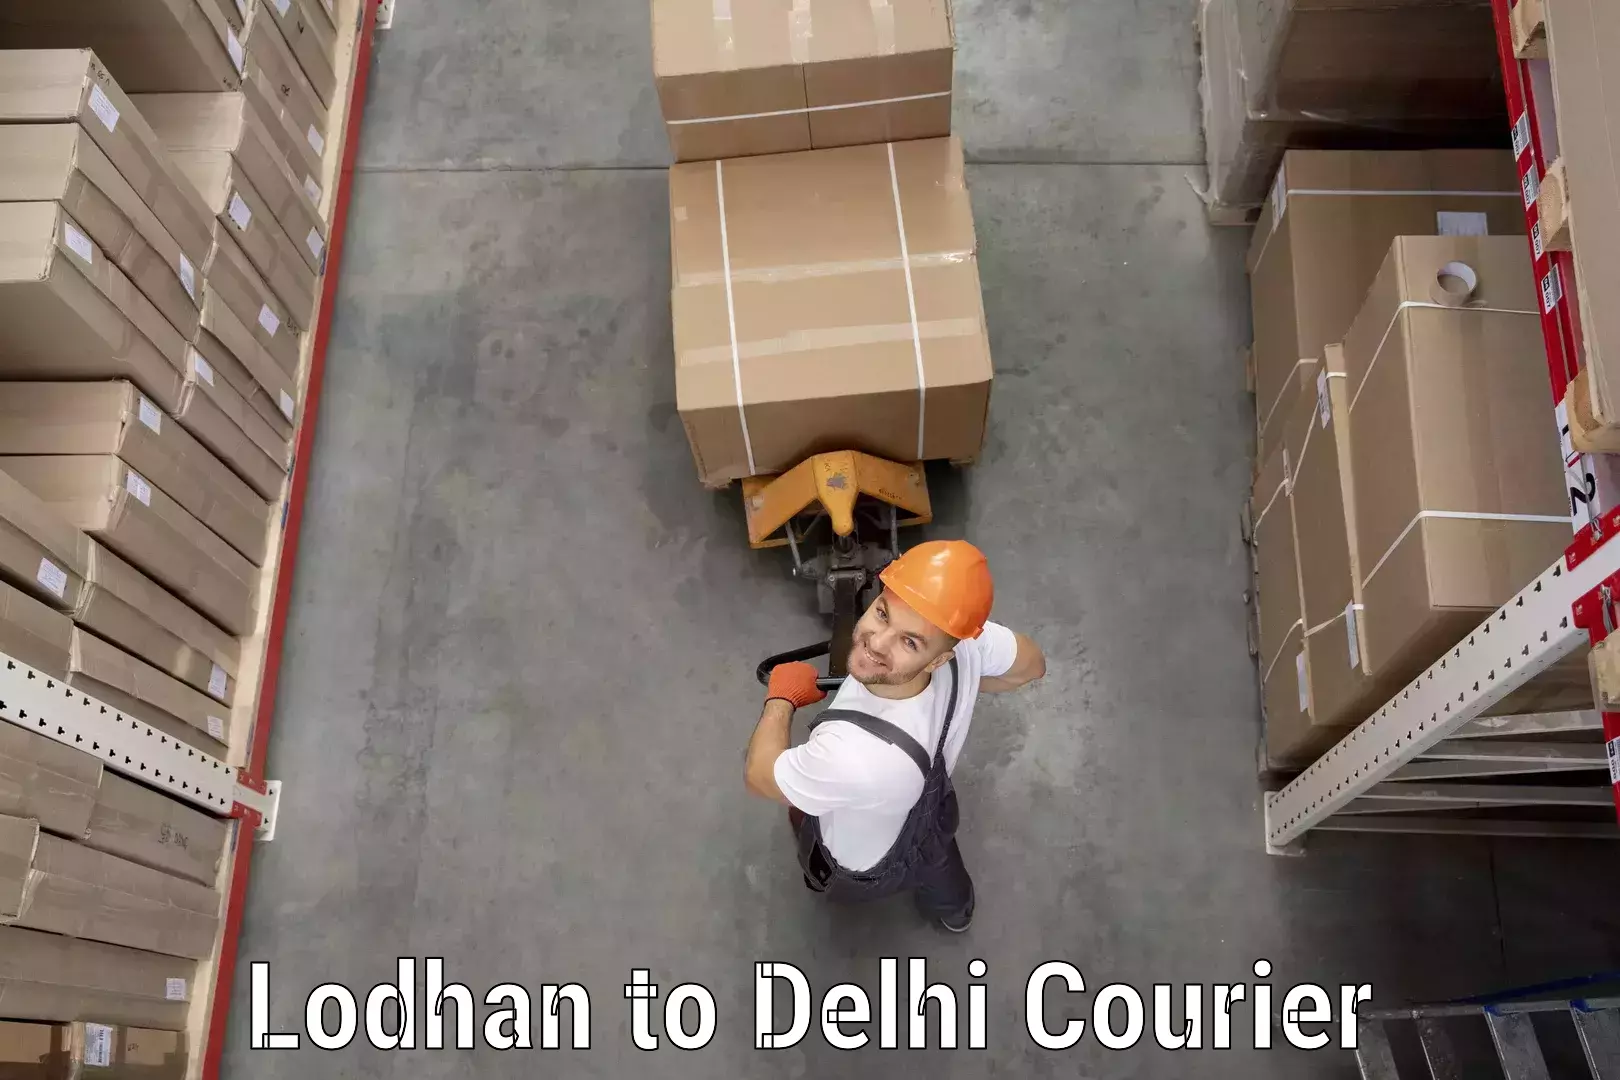 Budget-friendly shipping Lodhan to Delhi